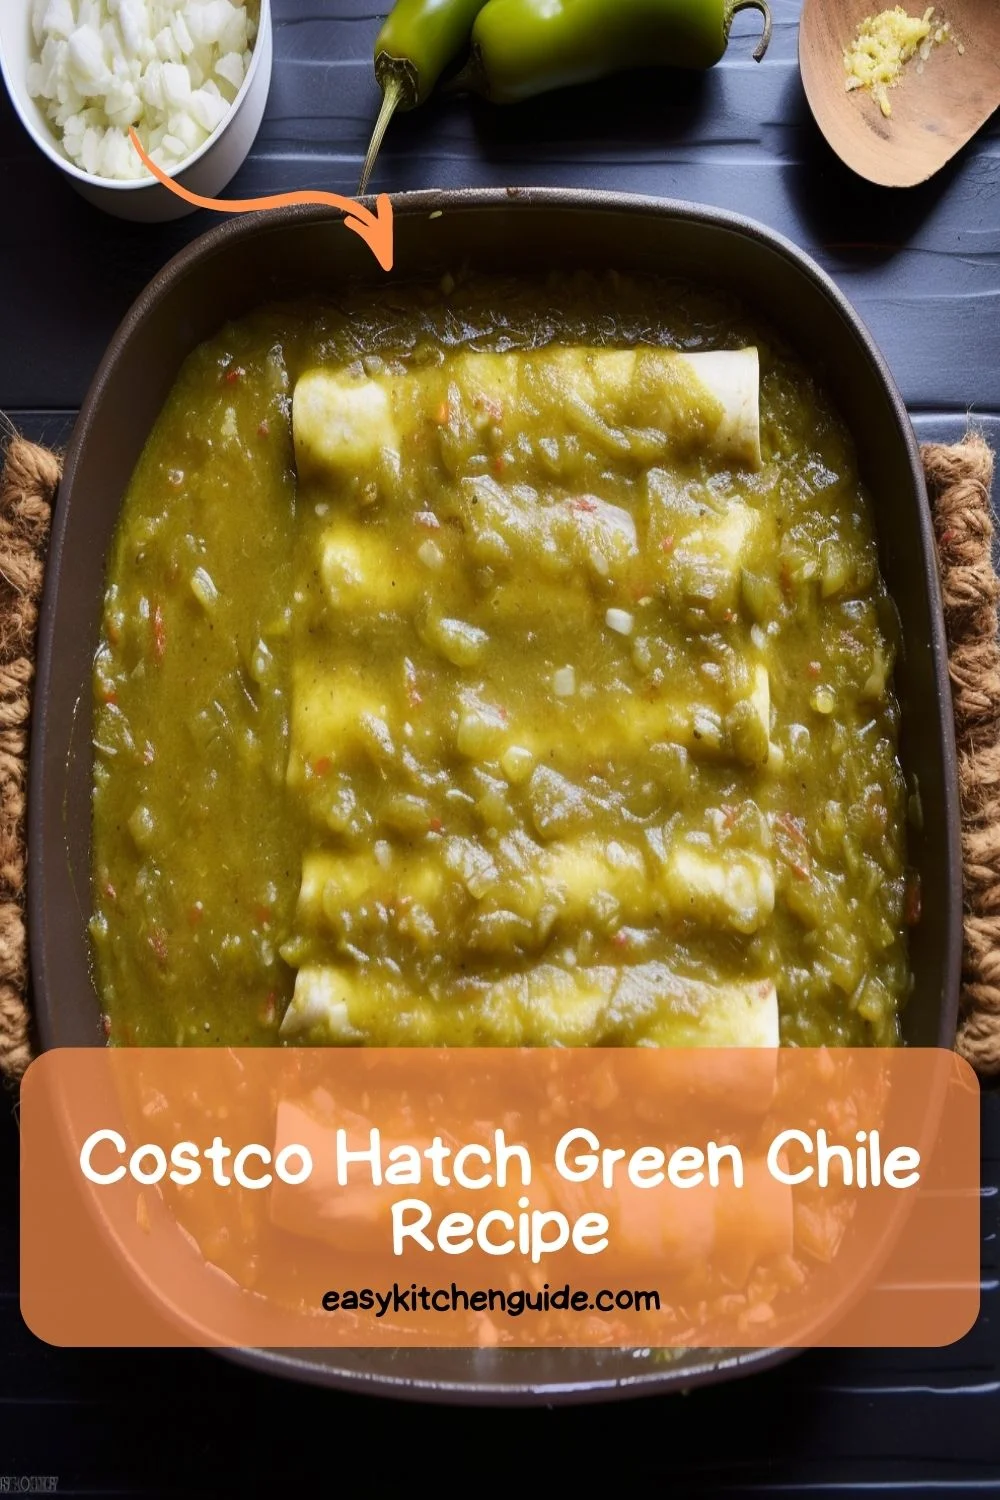 Costco Hatch Green Chile Recipe